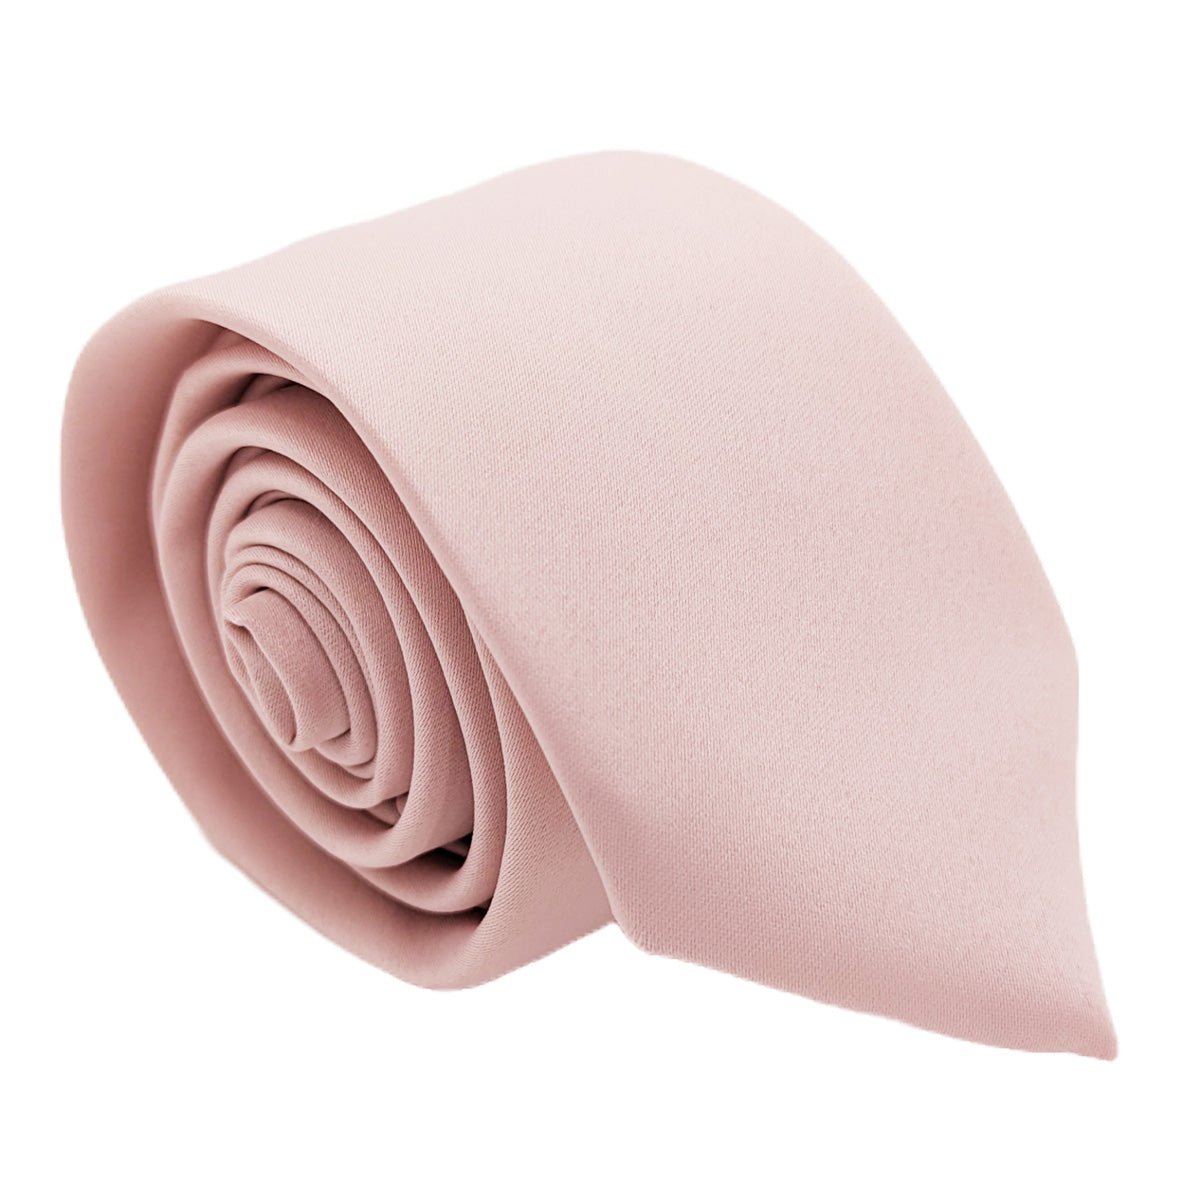 Blush Pink Wedding Tie